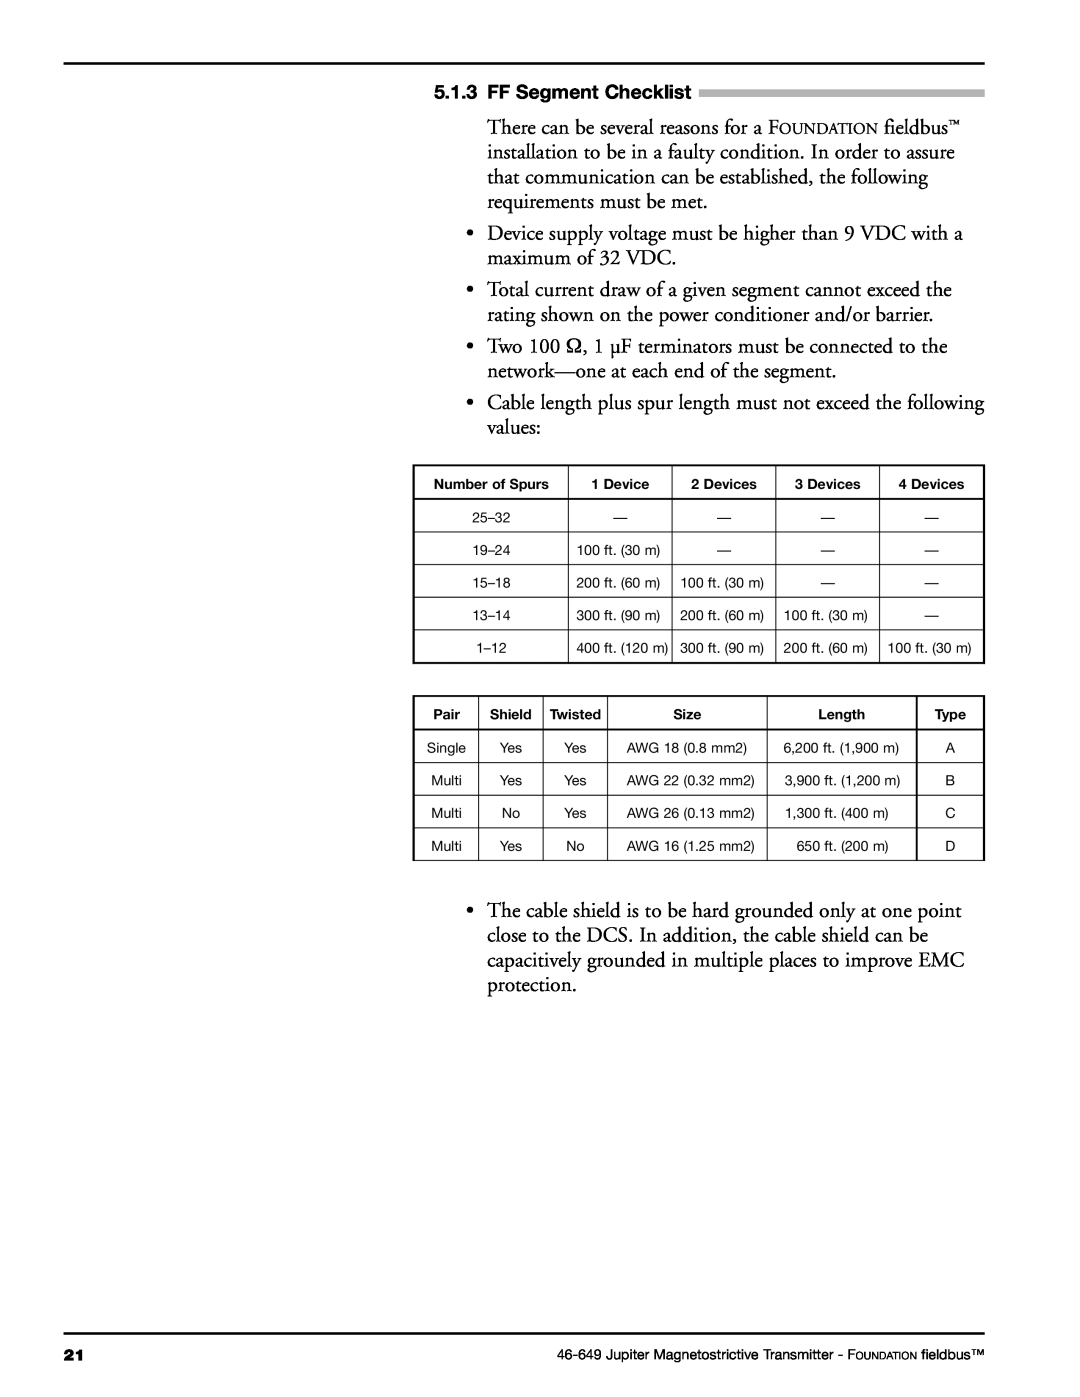 Orion 2xx manual FF Segment Checklist 